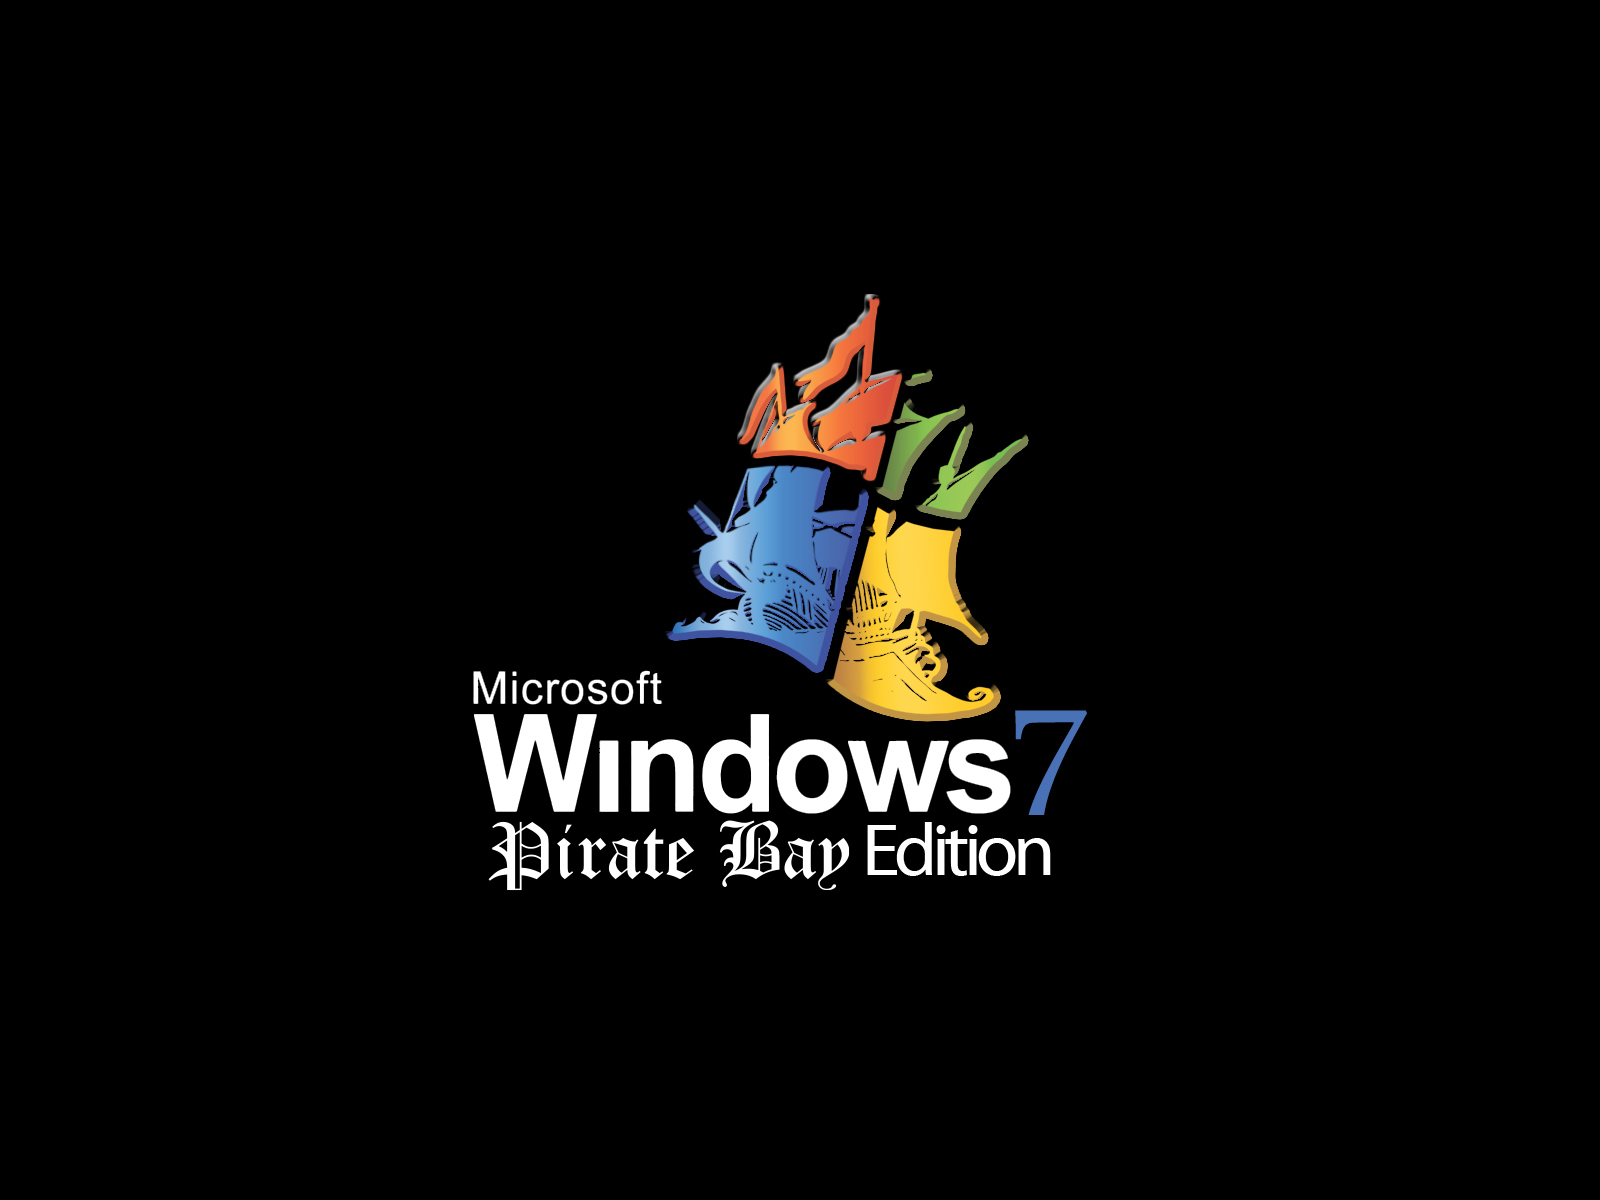 hdd unlock wizard torrent piratebay